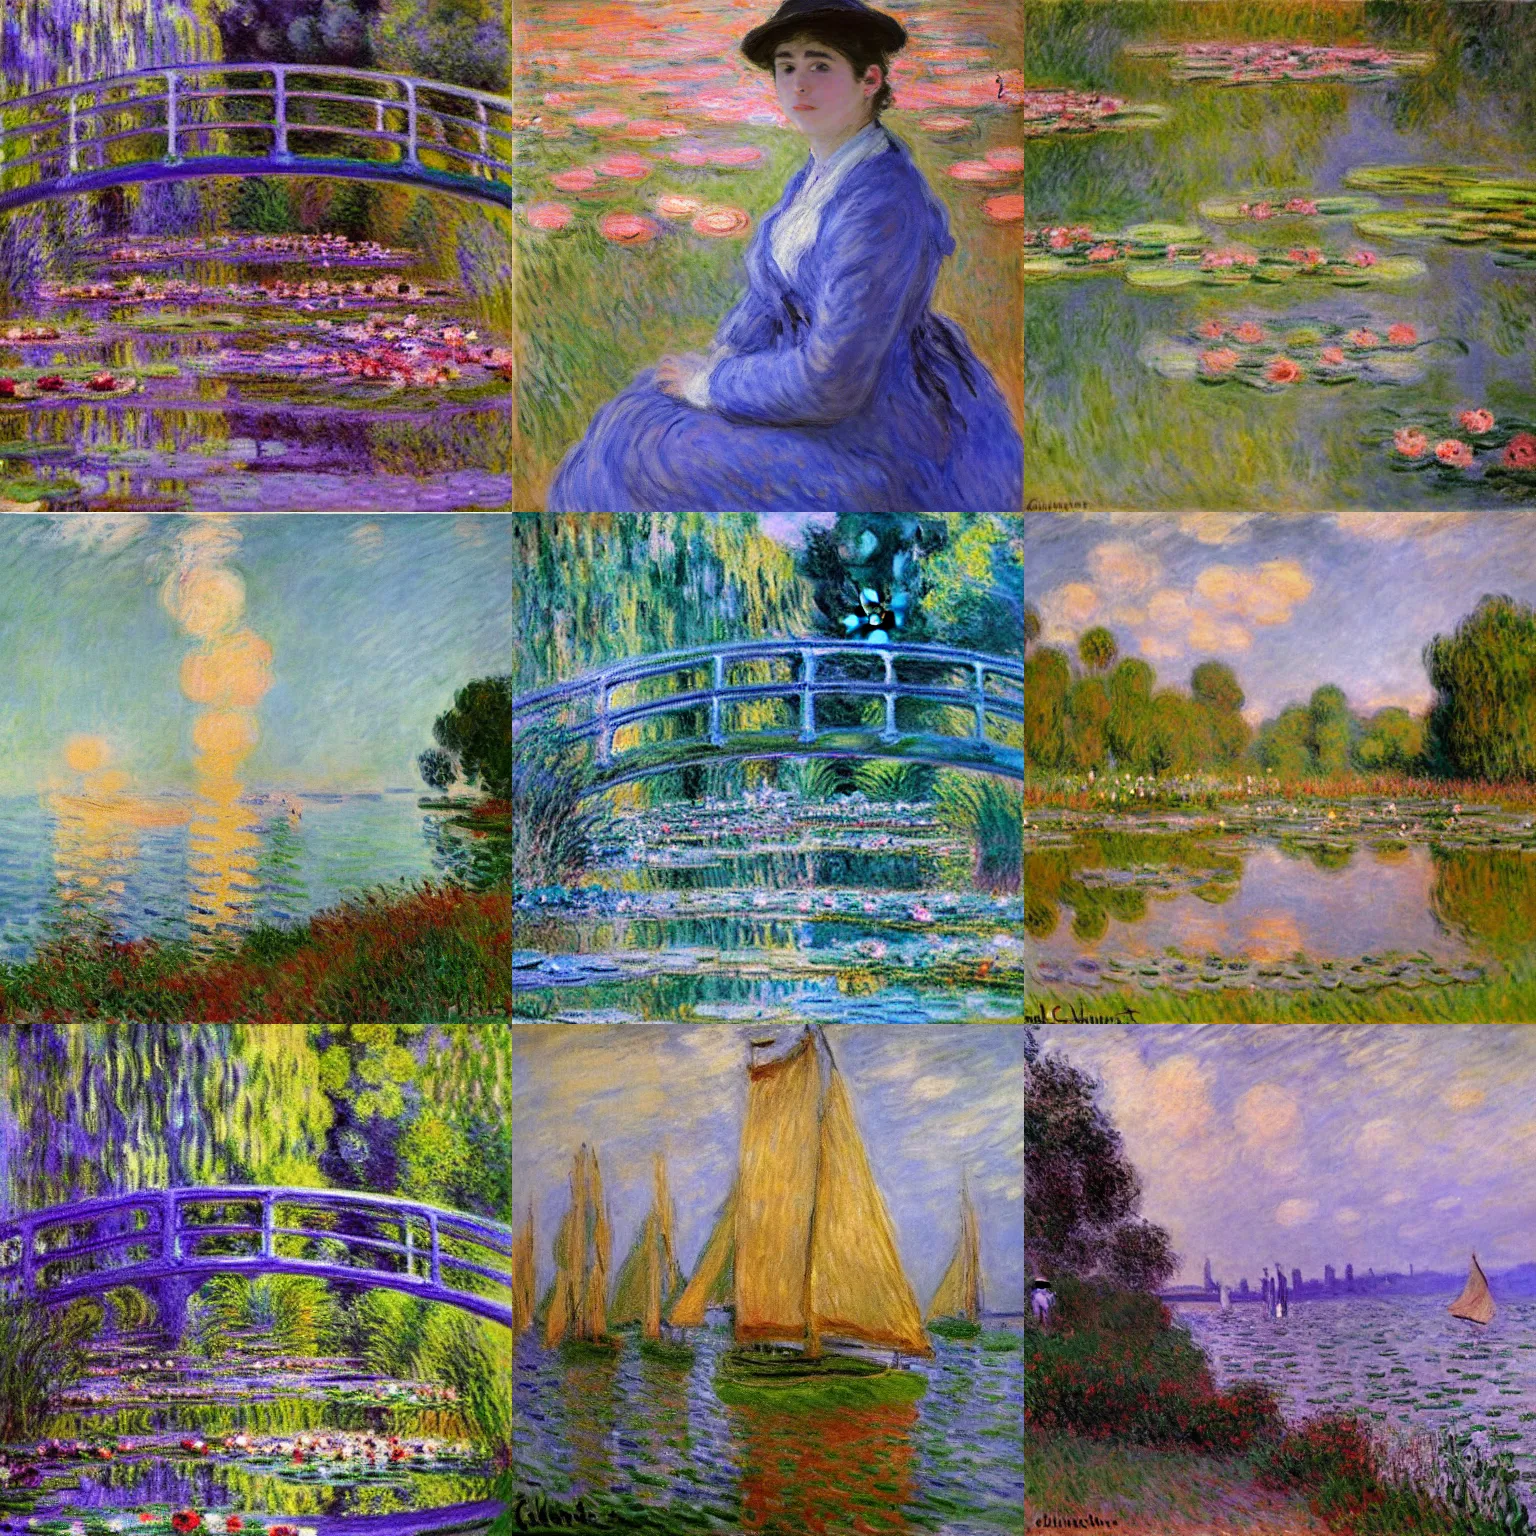 Prompt: art by Claude Monet